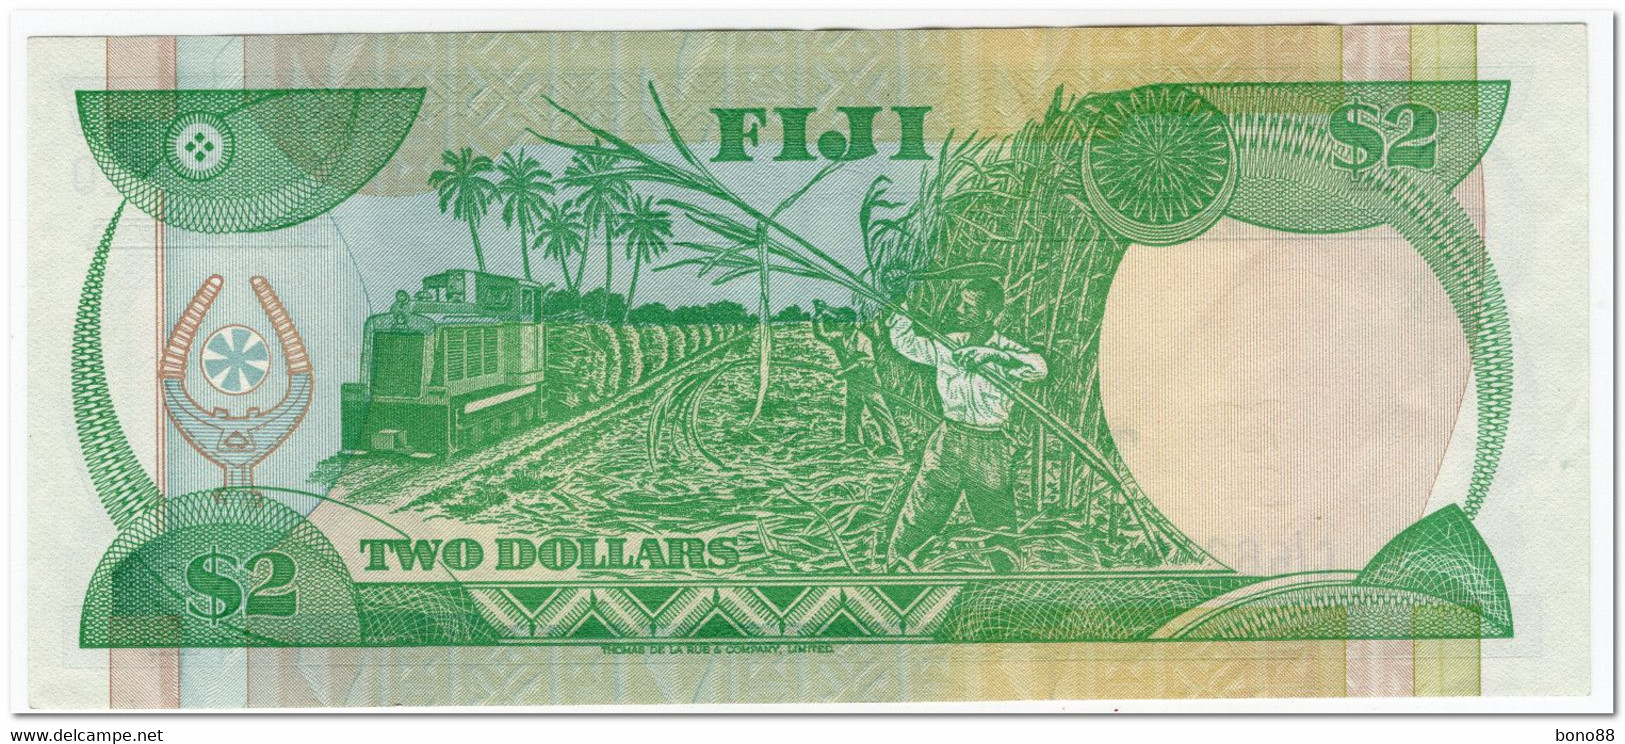 FIJI,2 DOLLARS,1983,P.82,VF-XF - Fiji